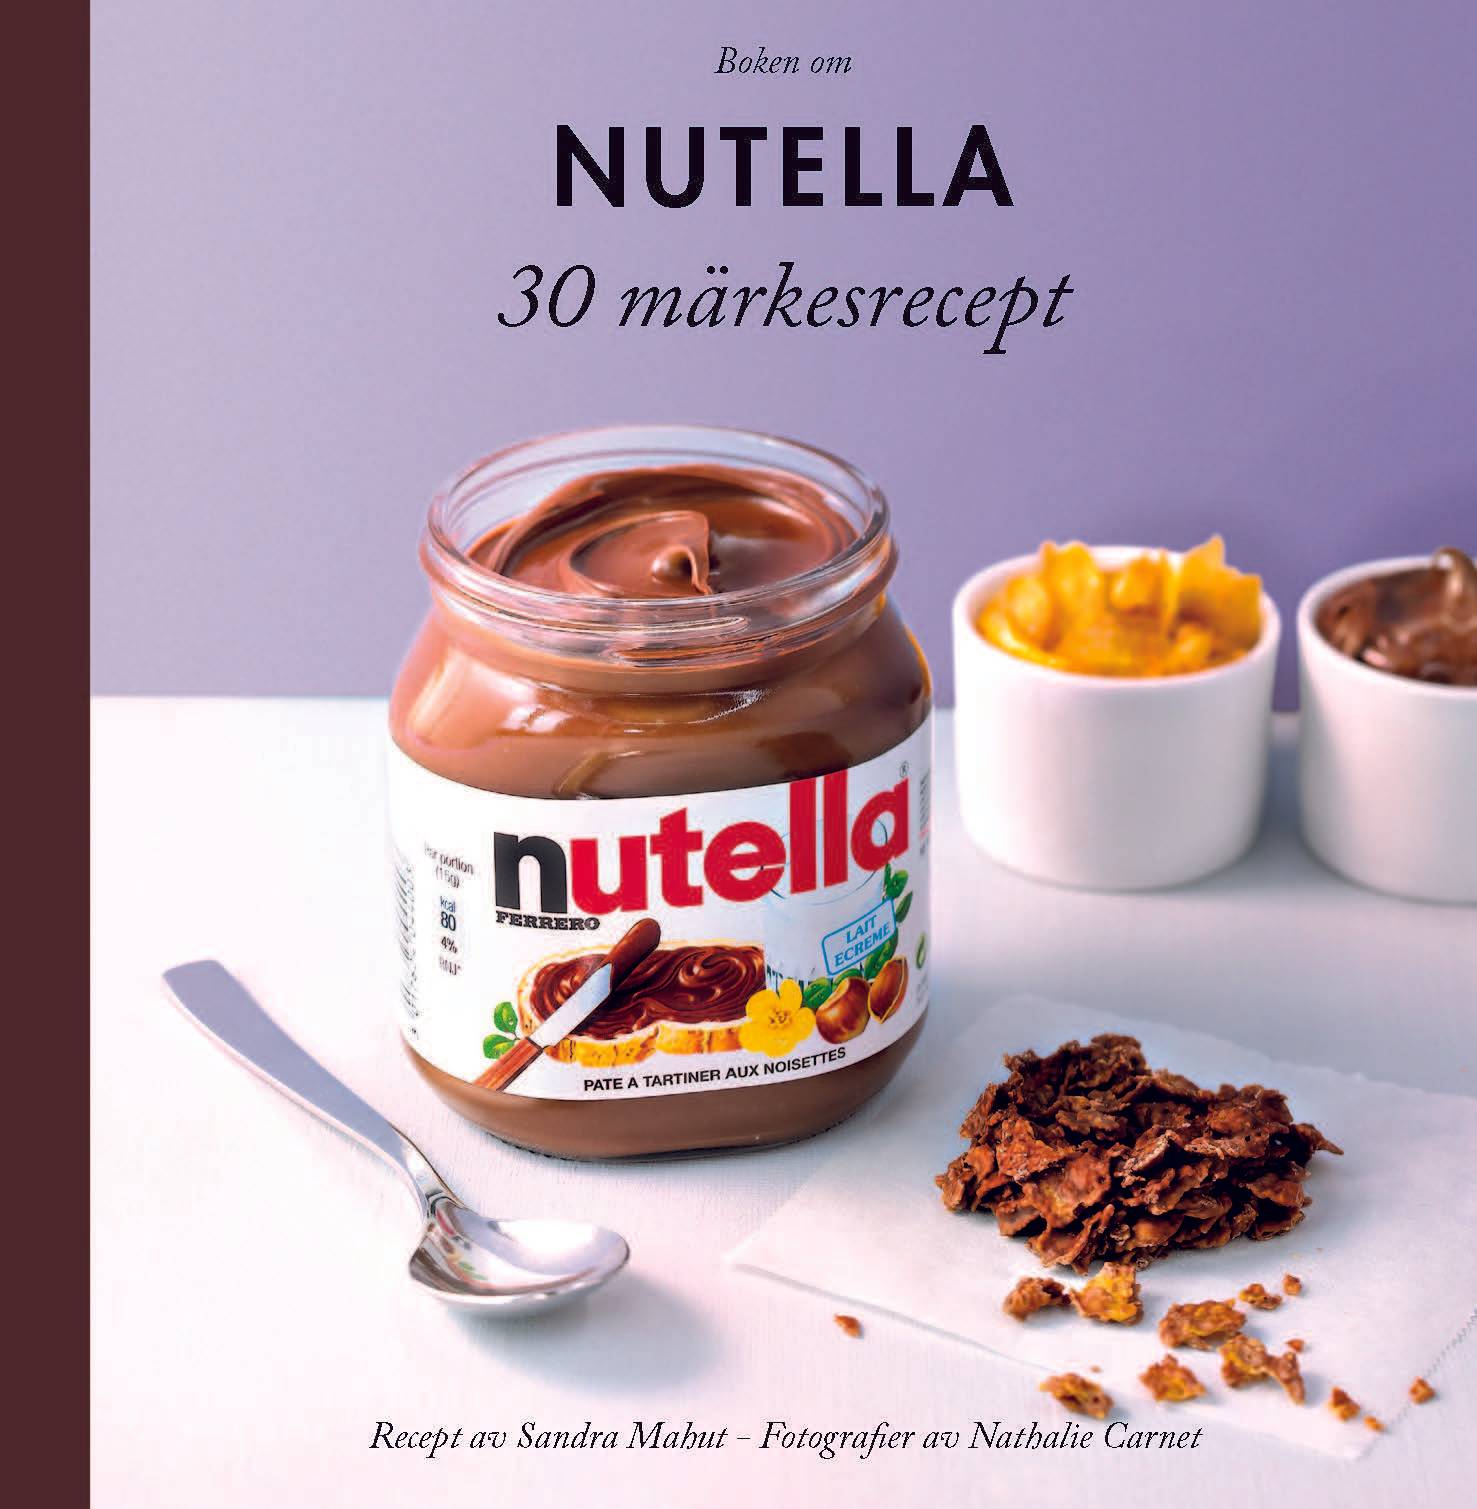 Boken om Nutella